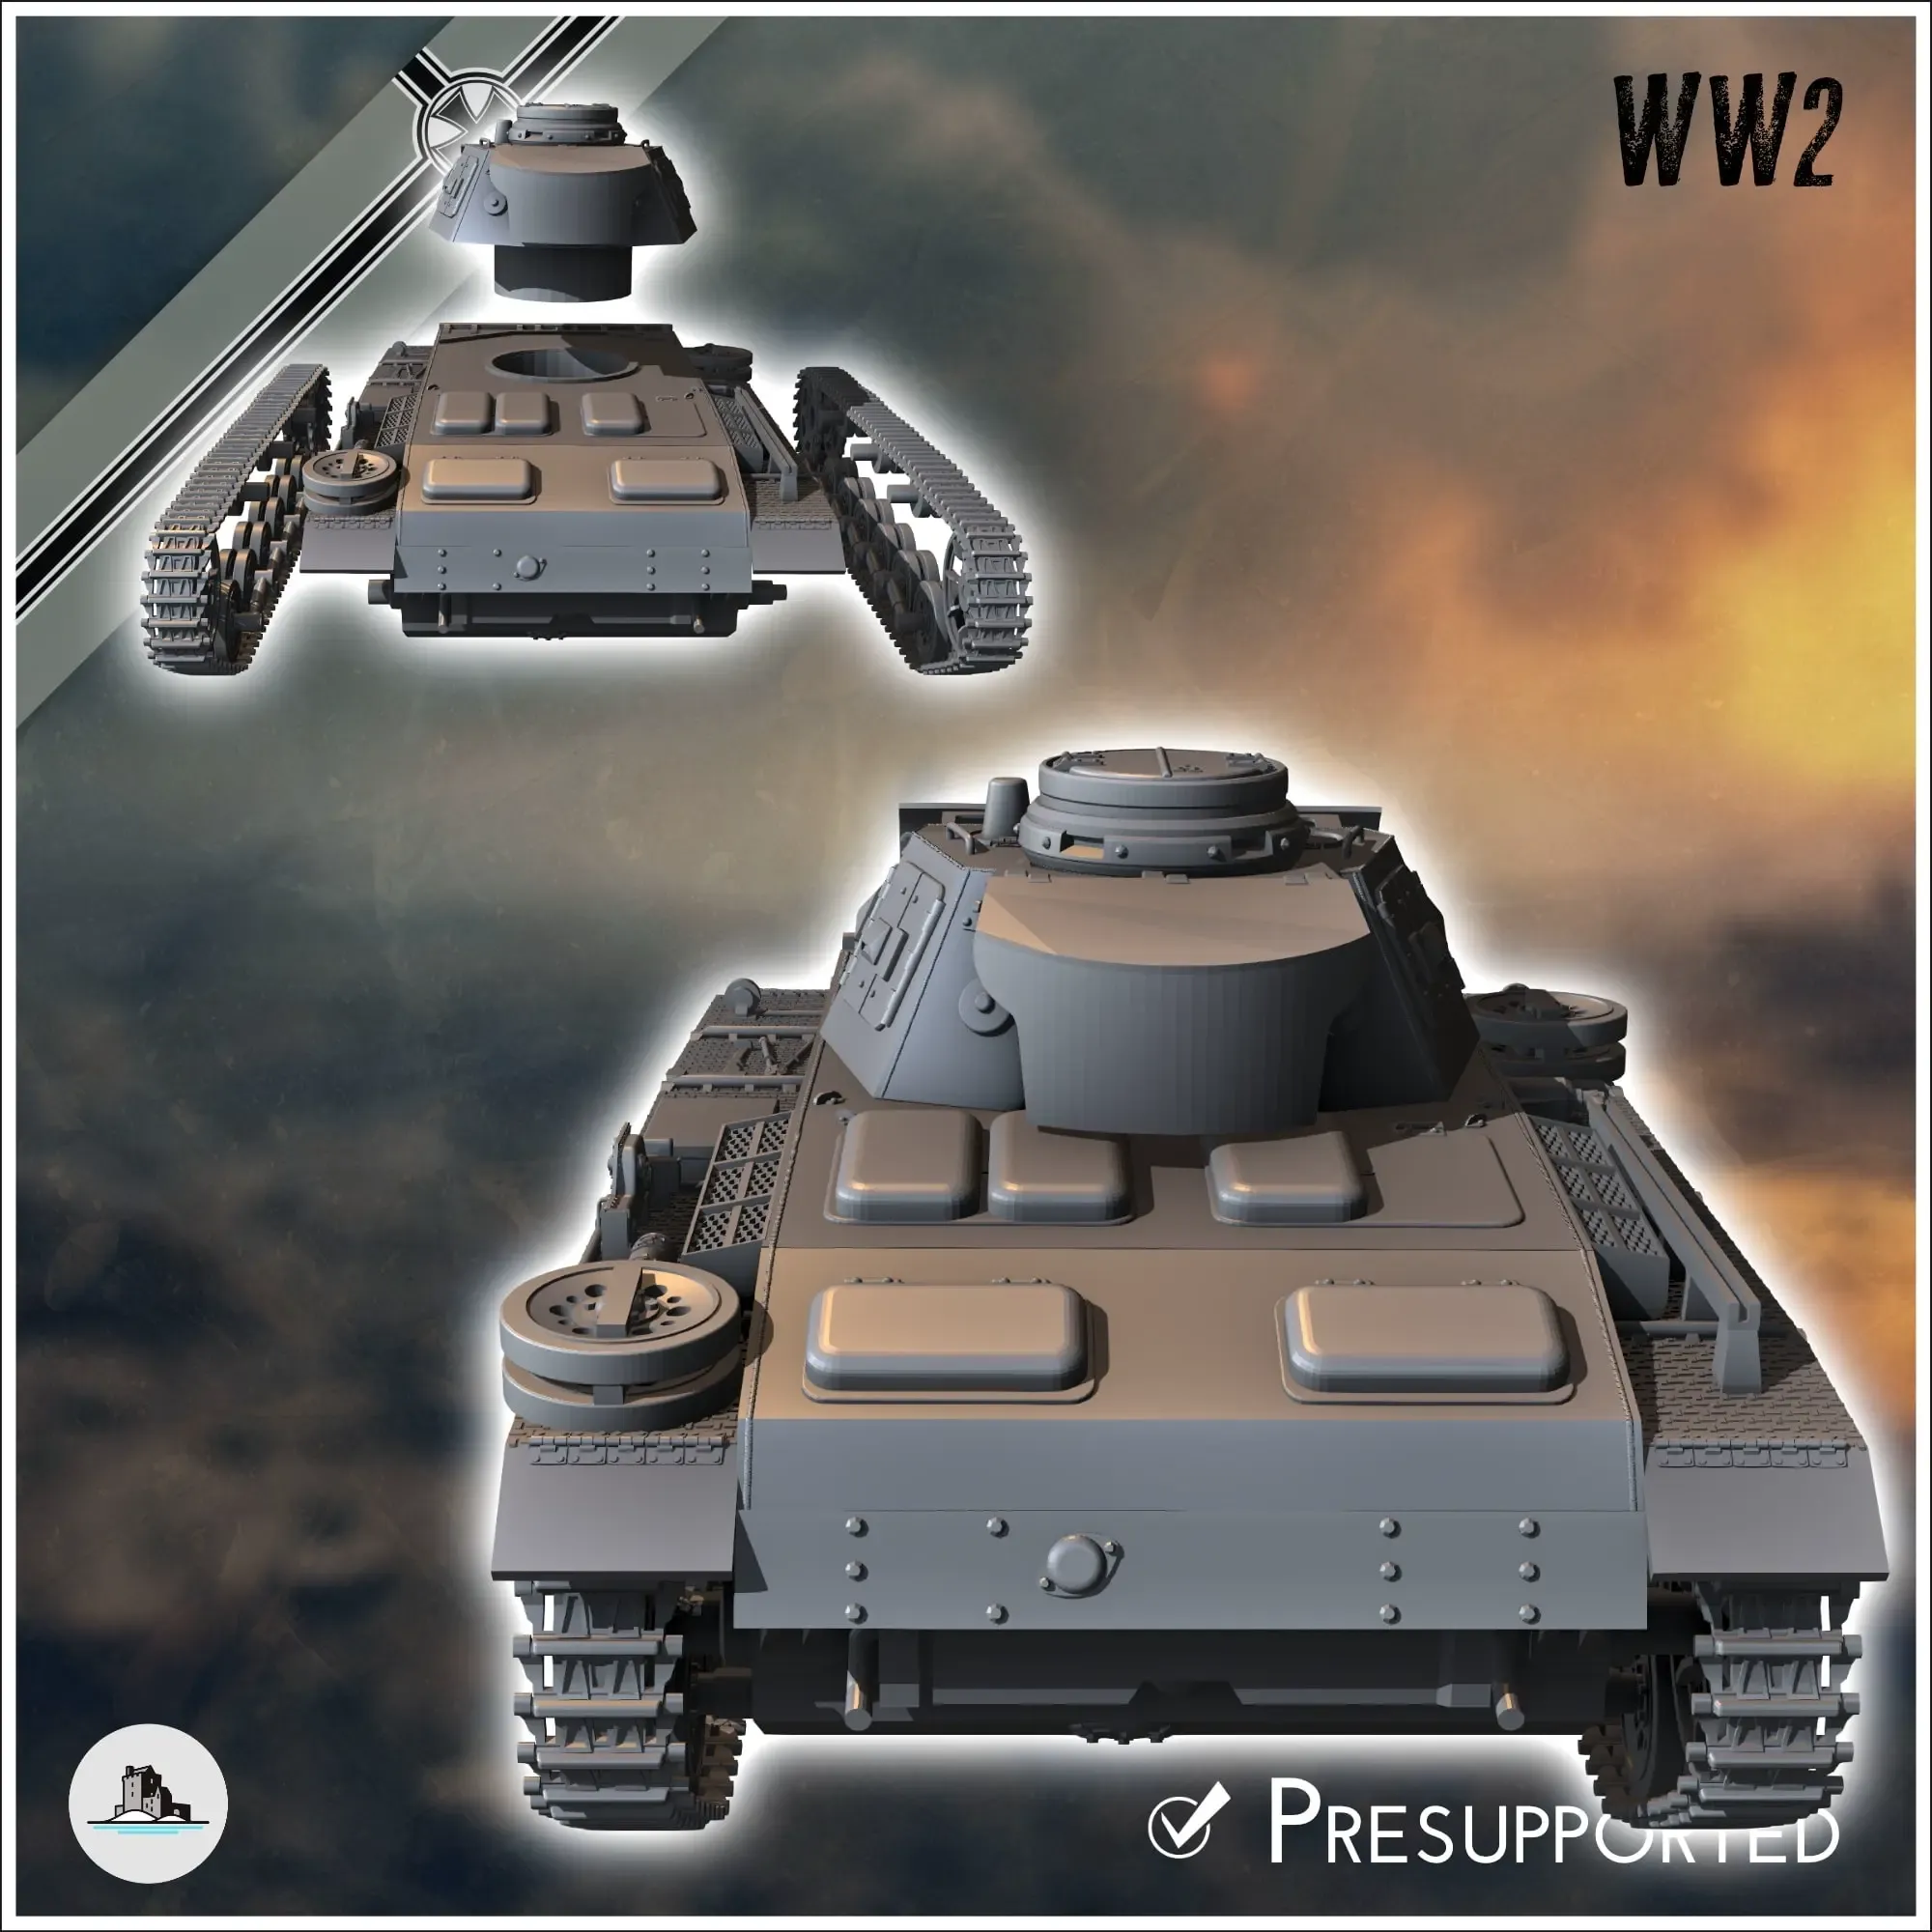 Panzer III Ausf. L - WW2 miniatures armor war flames world t